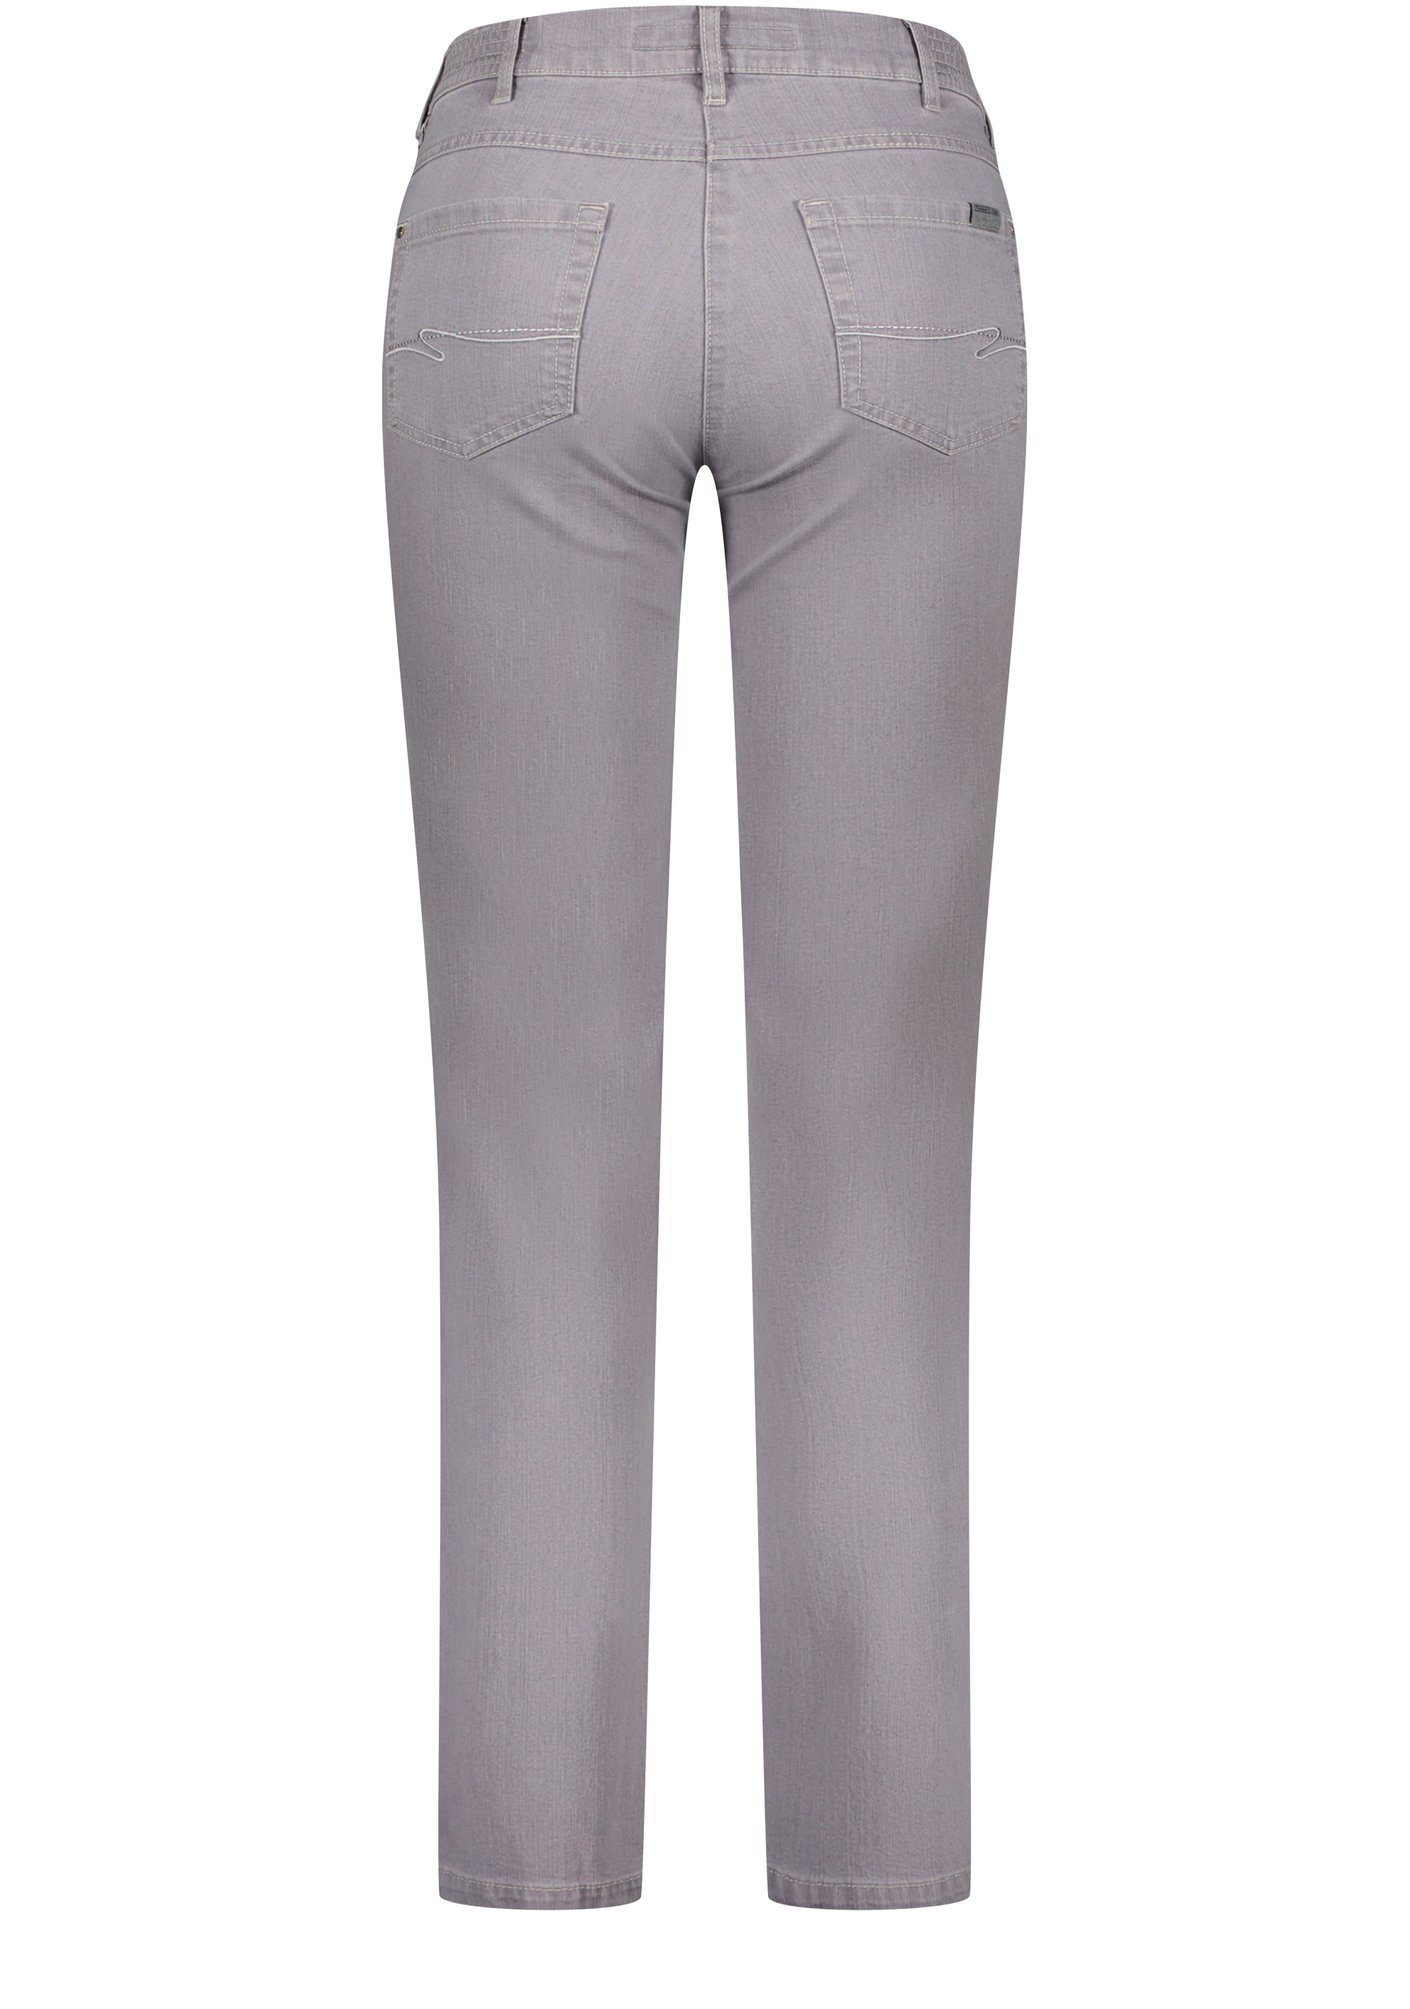 Zerres 5-Pocket-Jeans Greta (06797 511), Zerres - Damen 5-Pocket Jeans mit  Dehnbund und geradem Bein, Greta (06797 511)